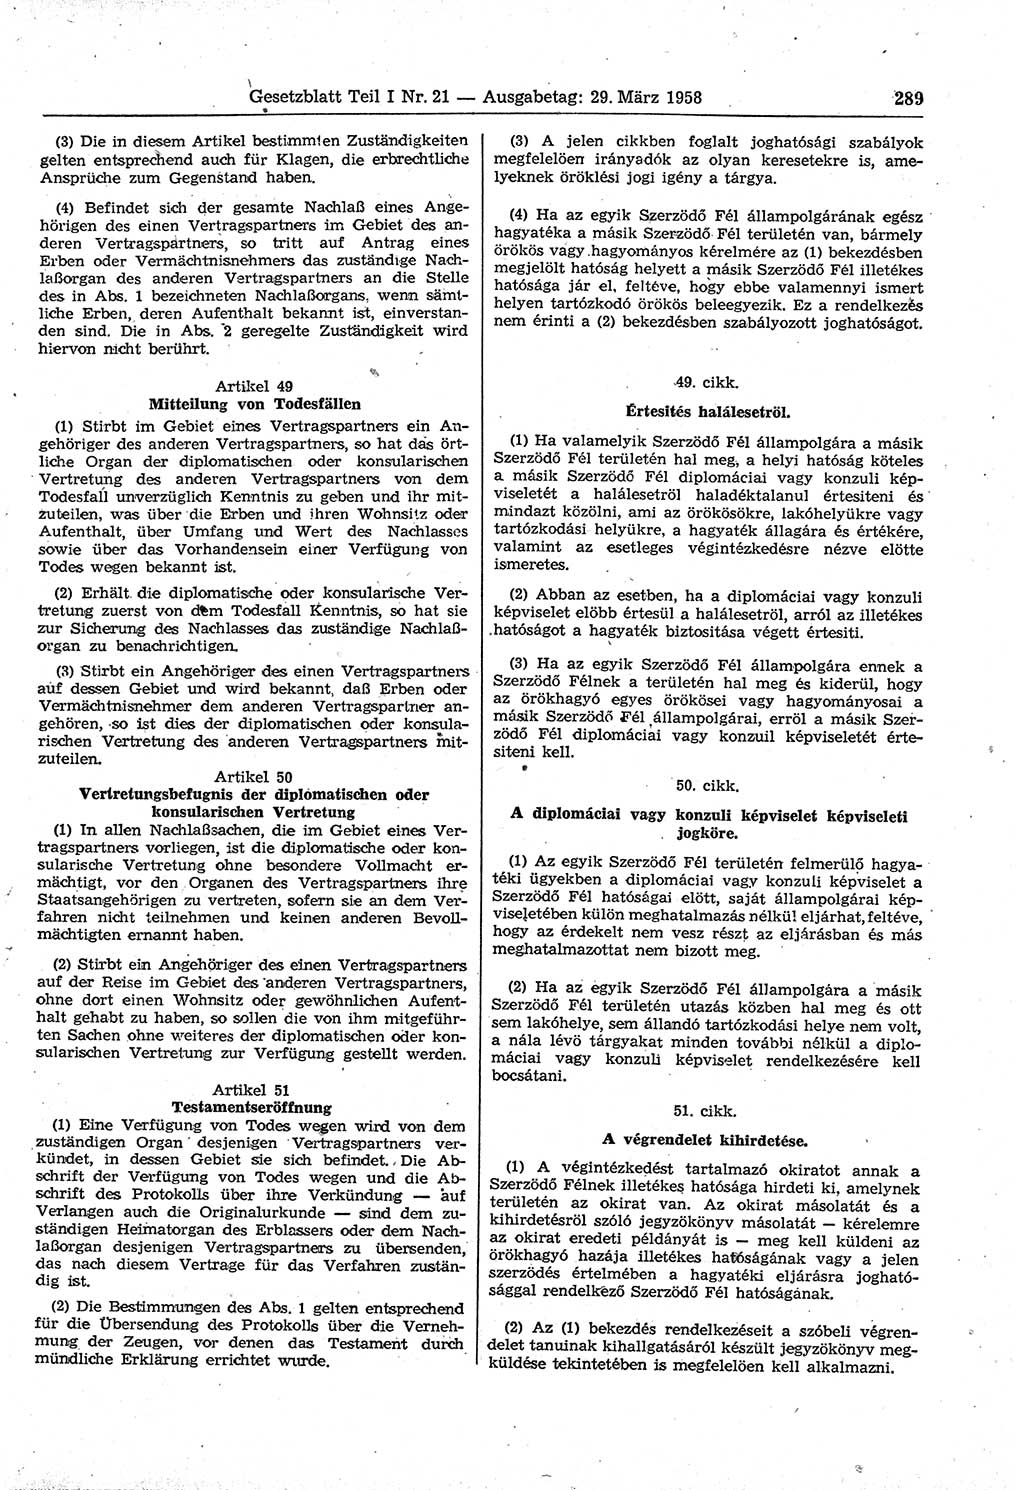 Gesetzblatt (GBl.) der Deutschen Demokratischen Republik (DDR) Teil Ⅰ 1958, Seite 289 (GBl. DDR Ⅰ 1958, S. 289)